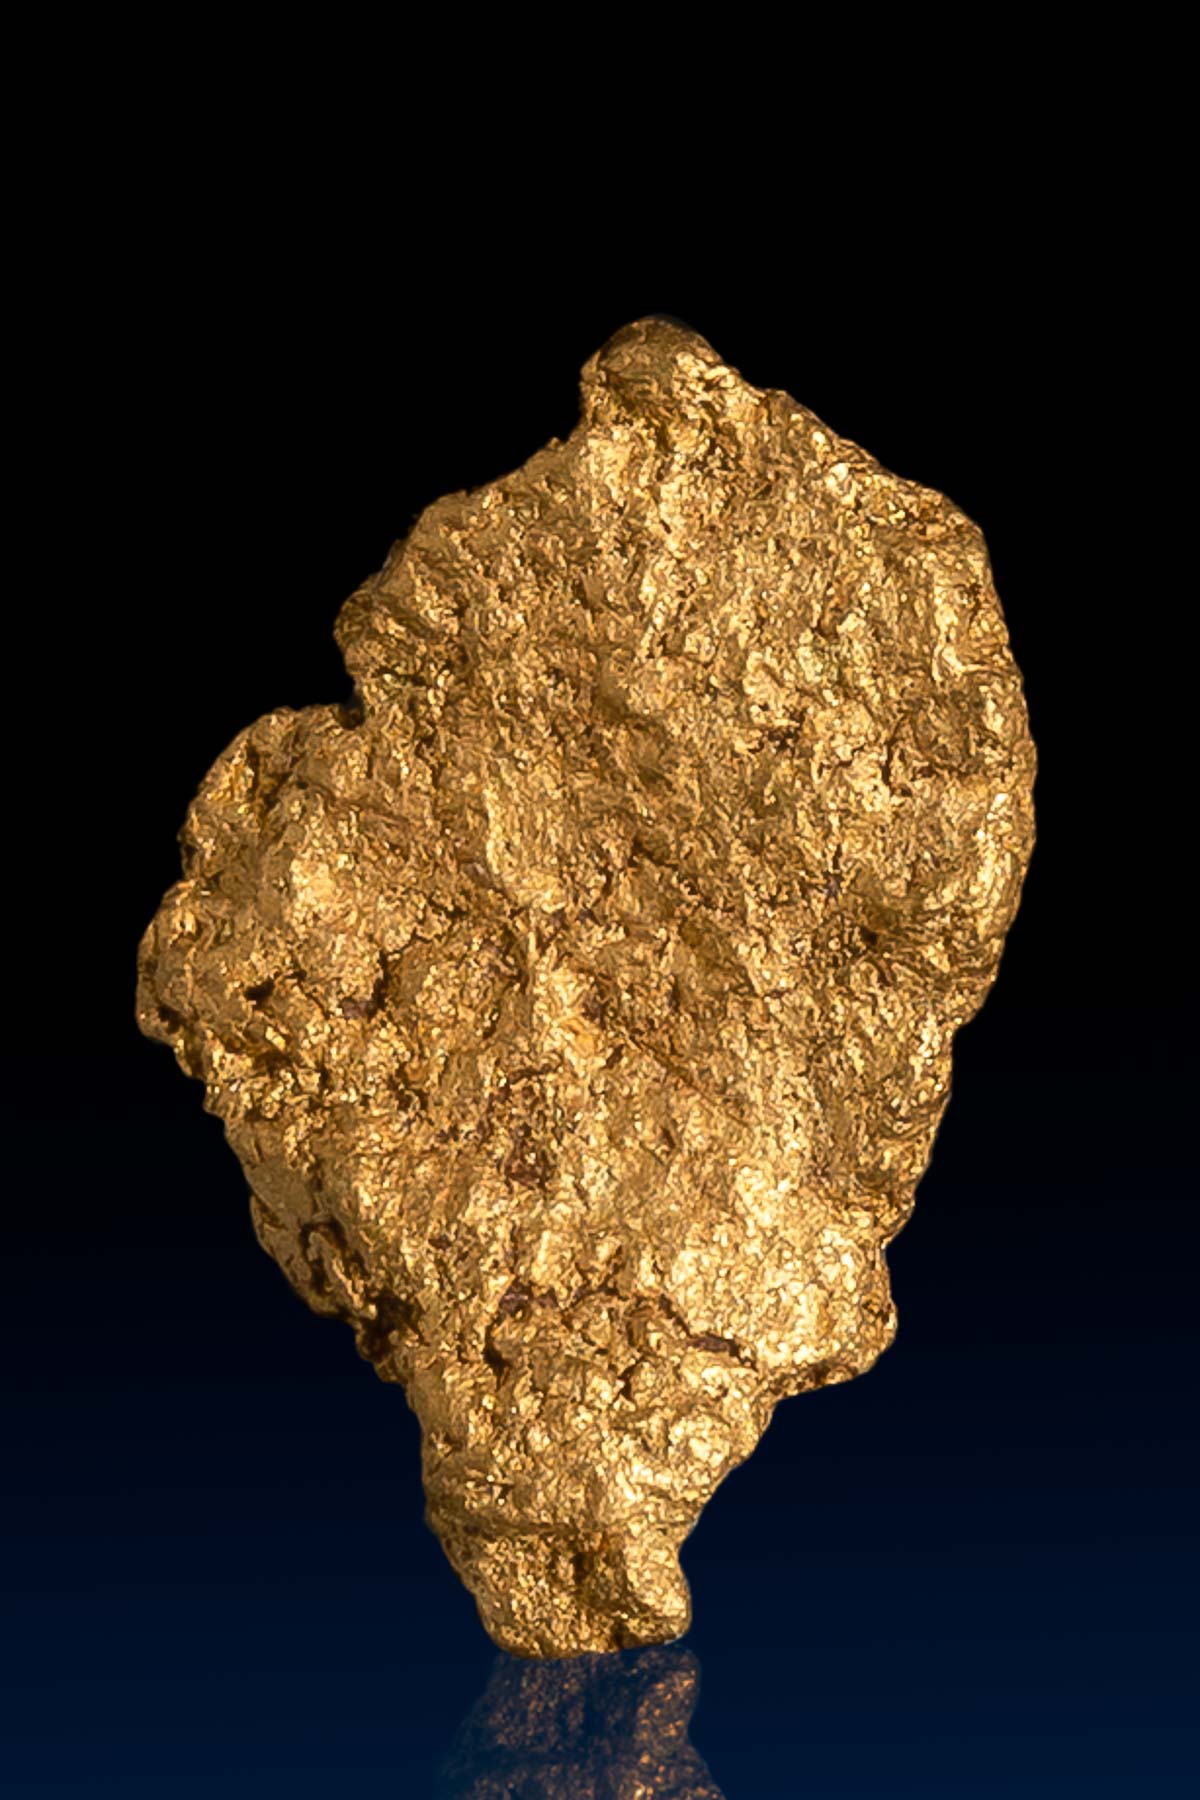 Tapered Shaped Arizona Natural Gold Nugget - 1.72 grams